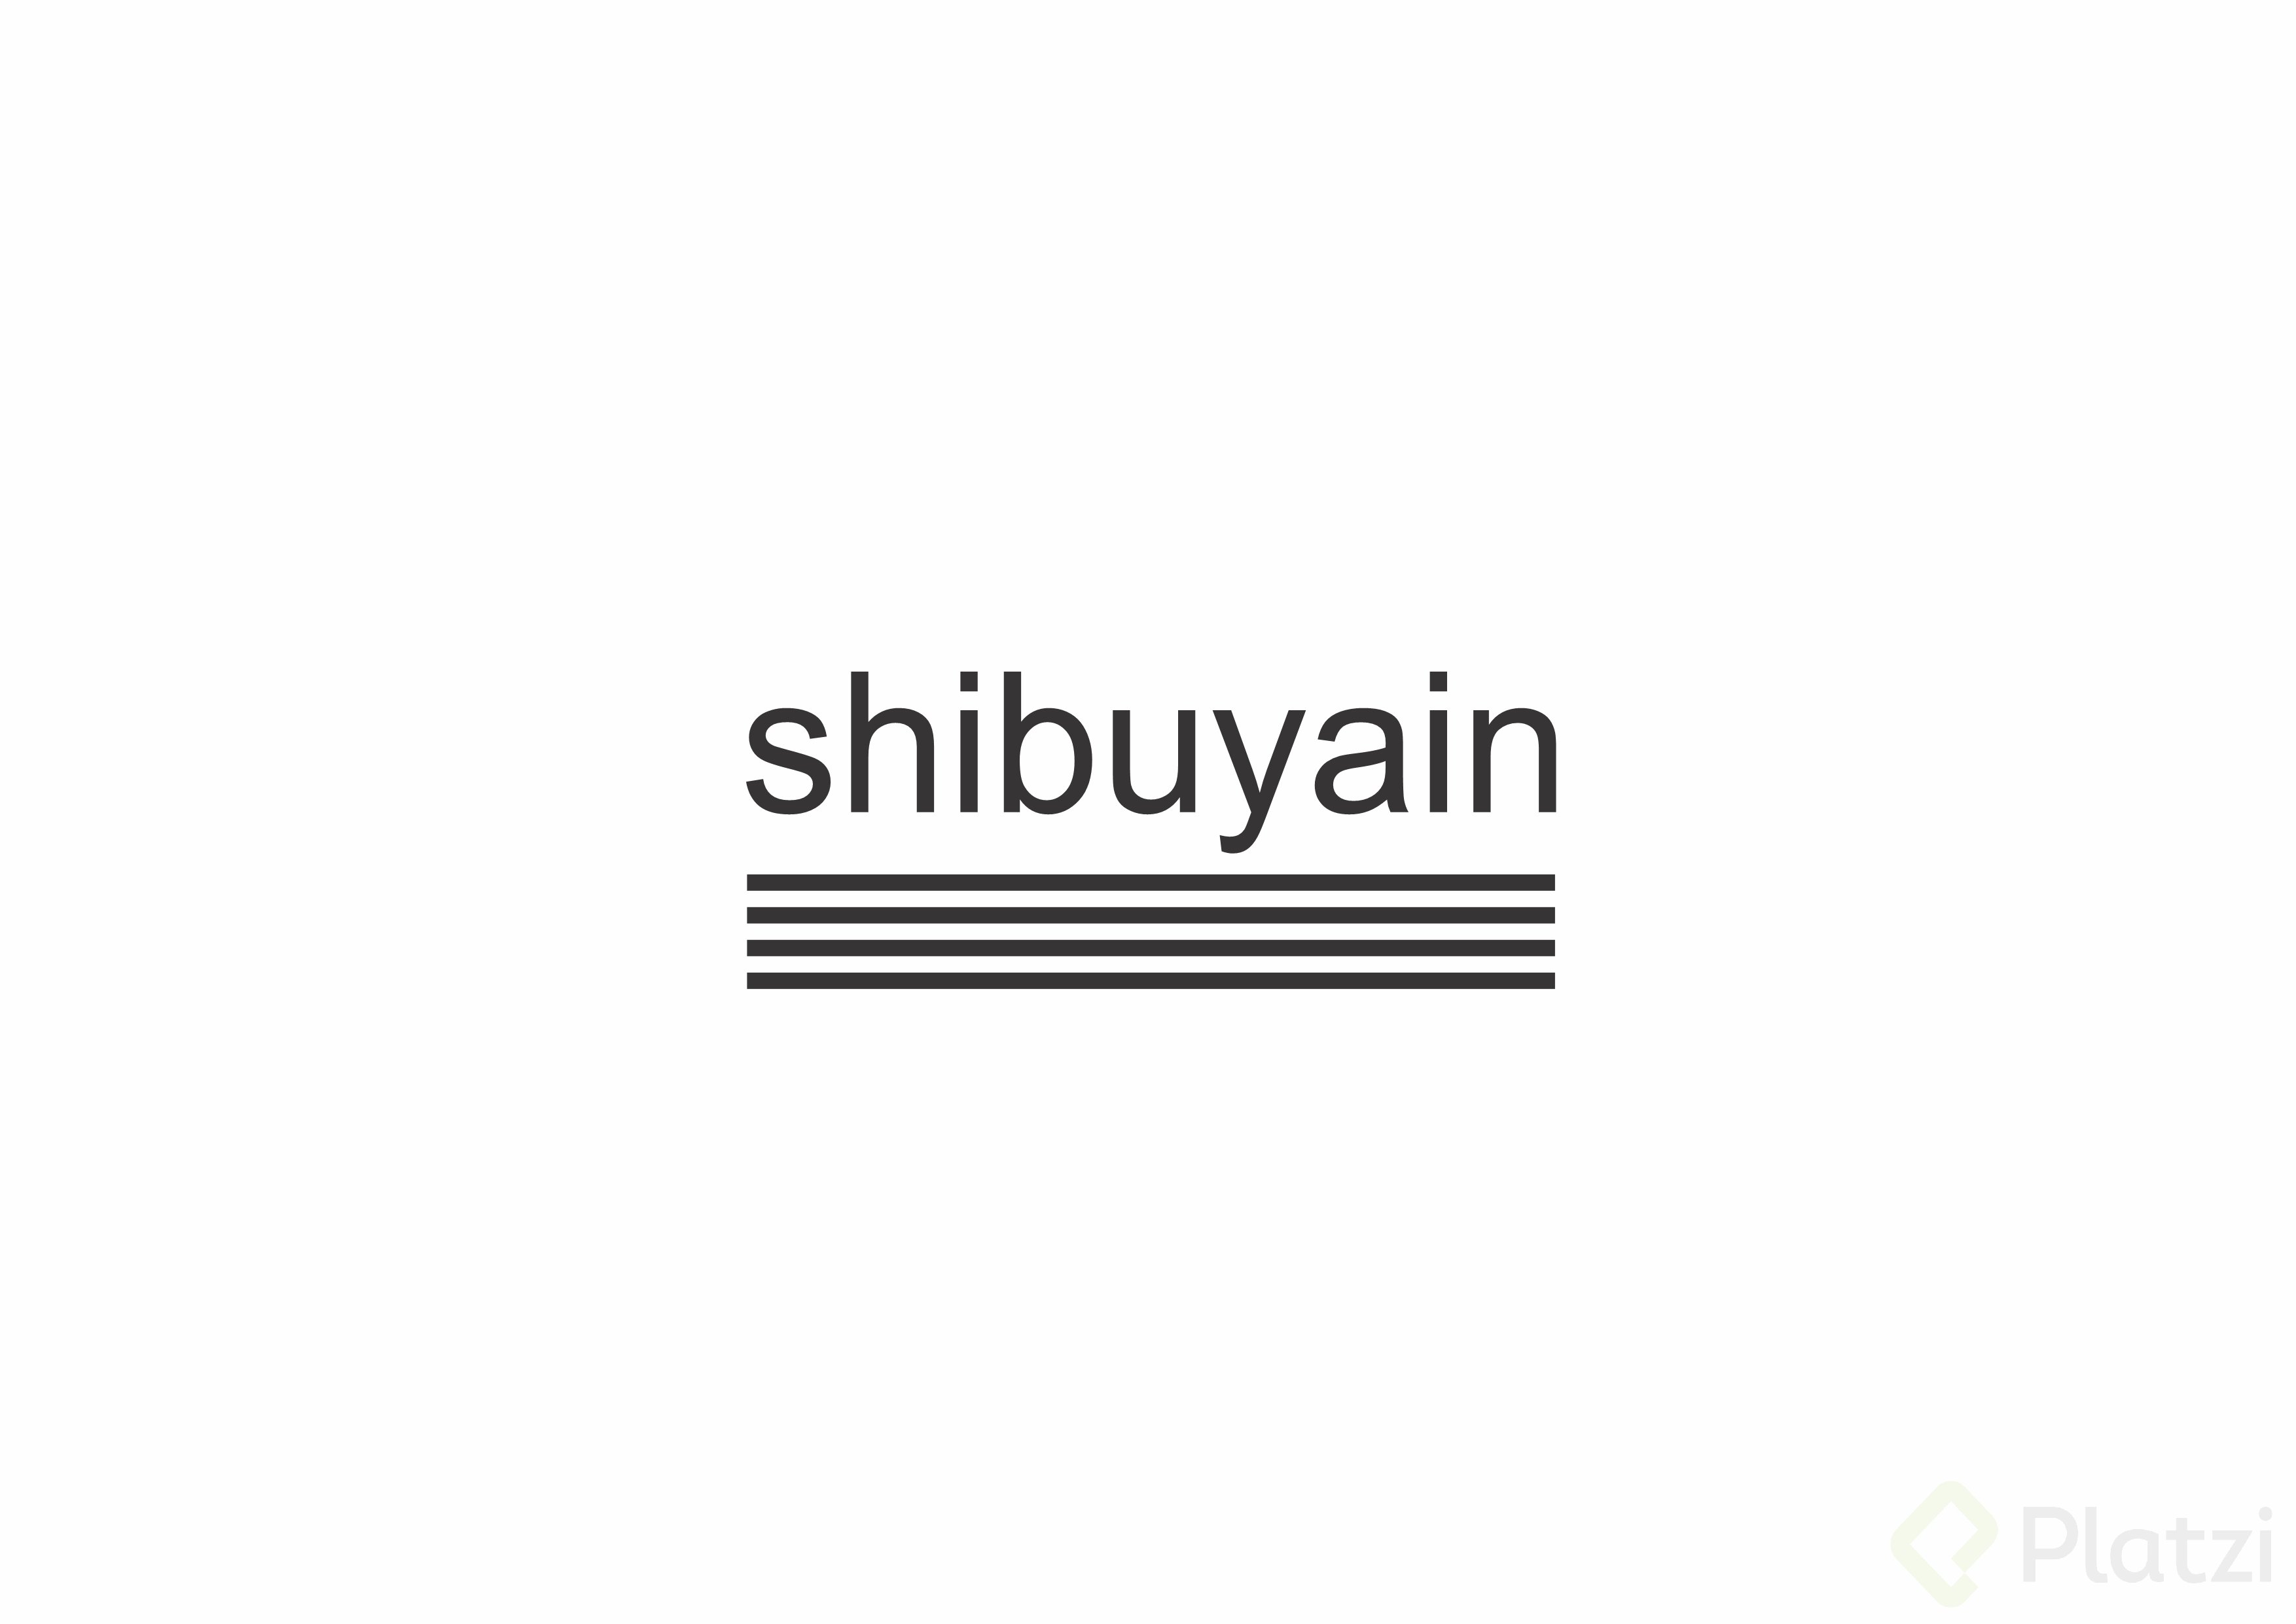 shibuyain boceto 2.jpg